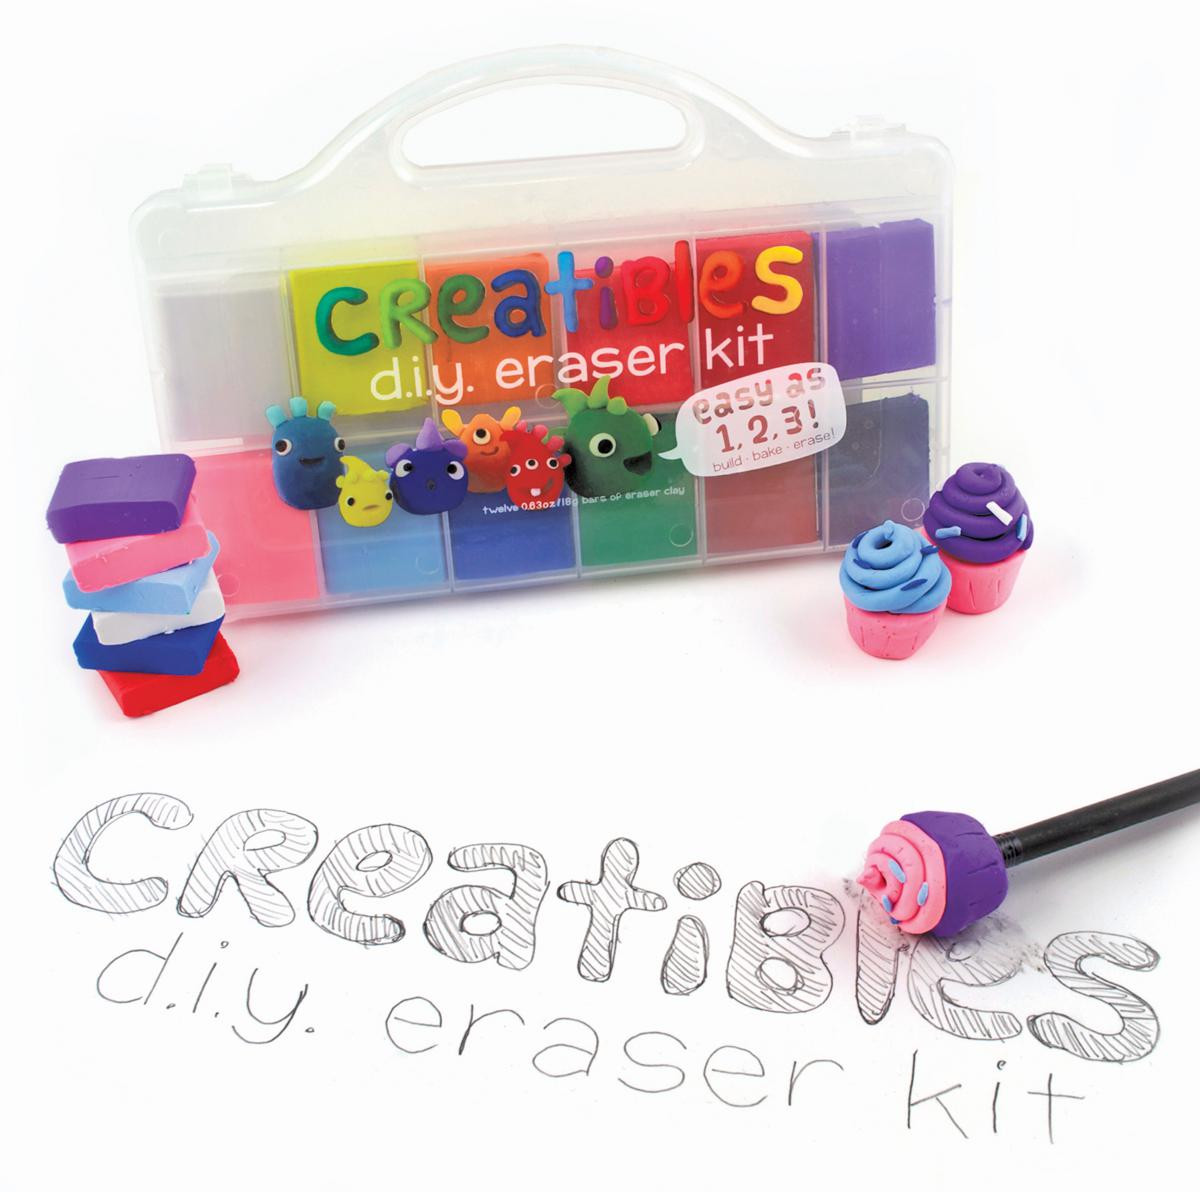 Best ideas about Creatibles DIY Eraser Kit
. Save or Pin Creatibles DIY Erasers Kit Set of 12 Colors Spring Now.